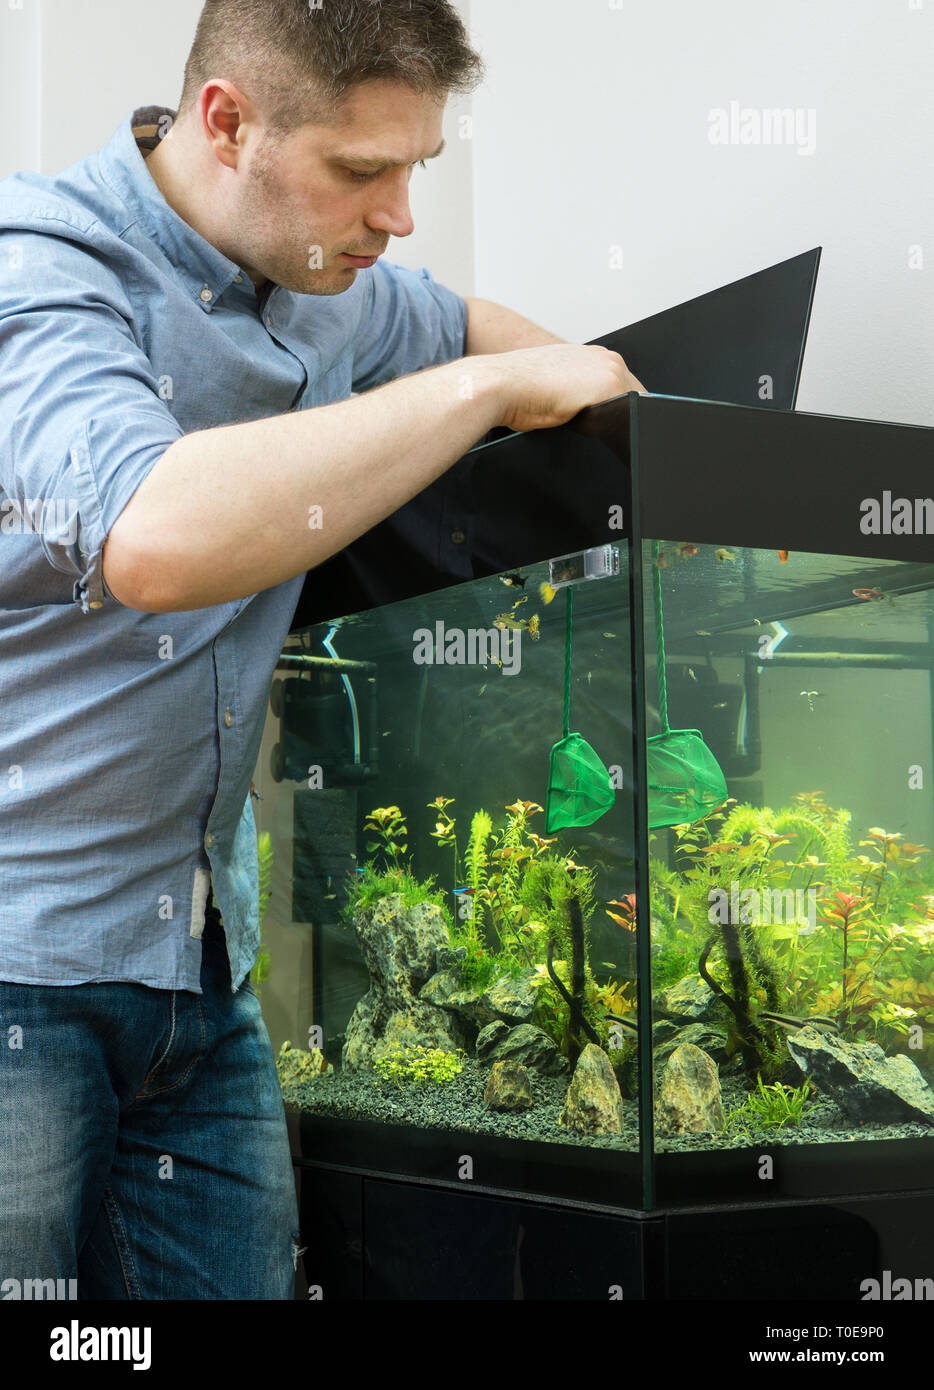 Bel homme attraper les poissons dans l'aquarium Photo Stock - Alamy